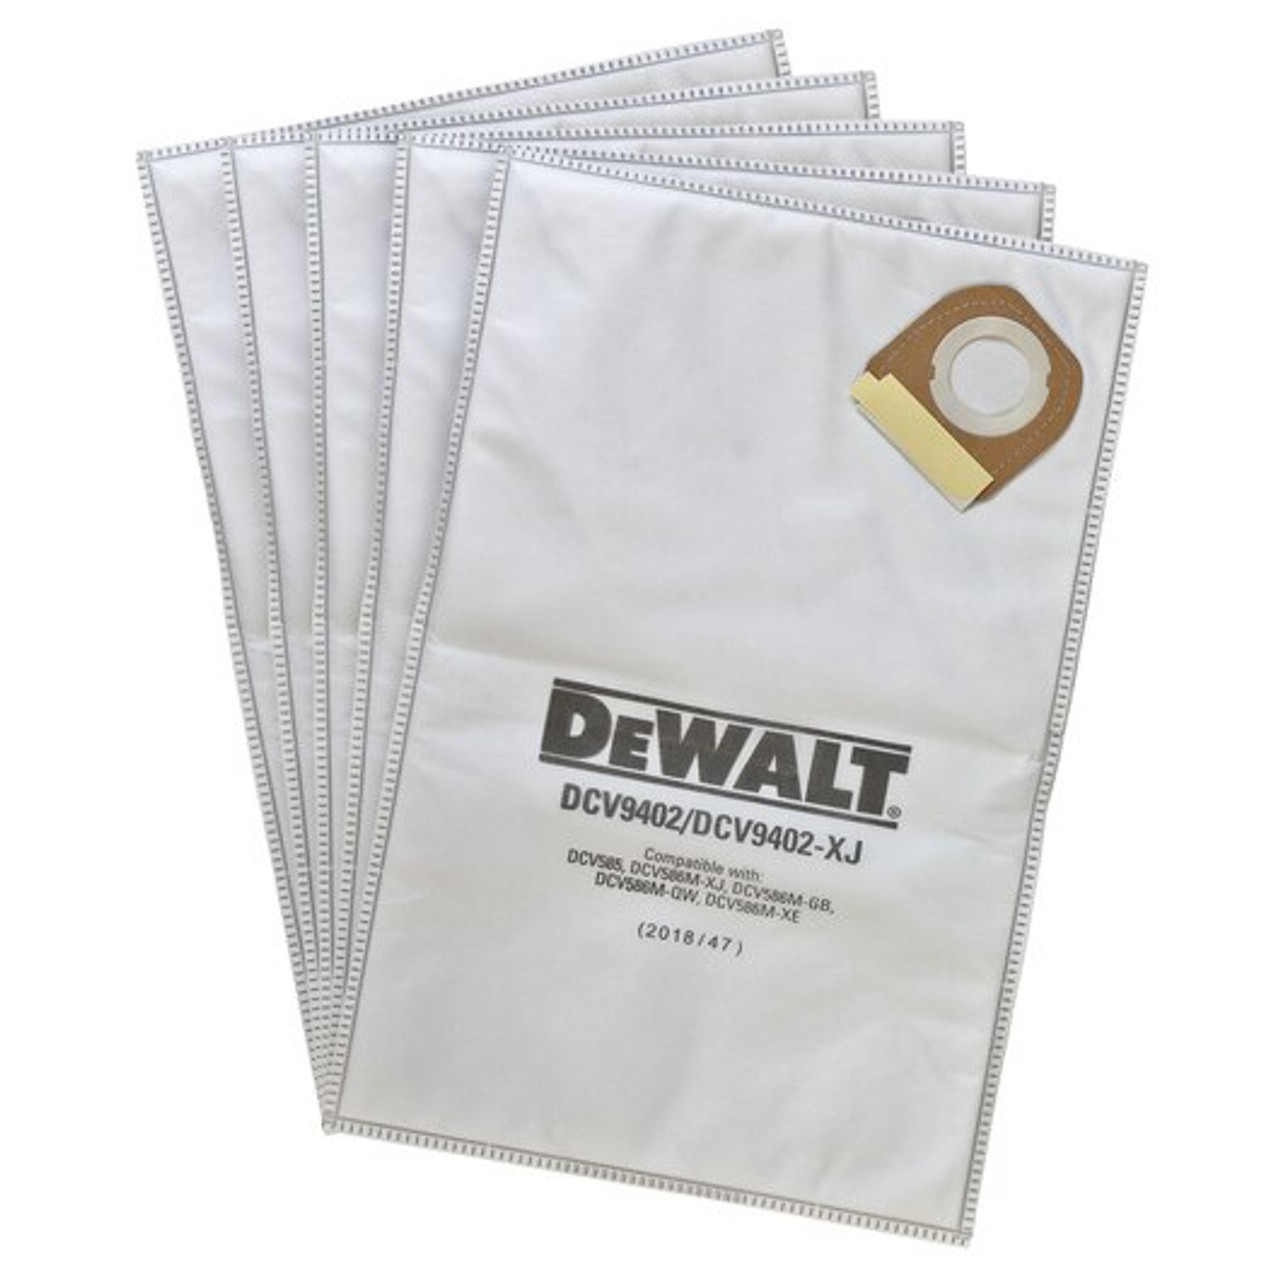 Dewalt DCV9402 Fleece Bag (5 Pack) for DEWALT Dust Extractors